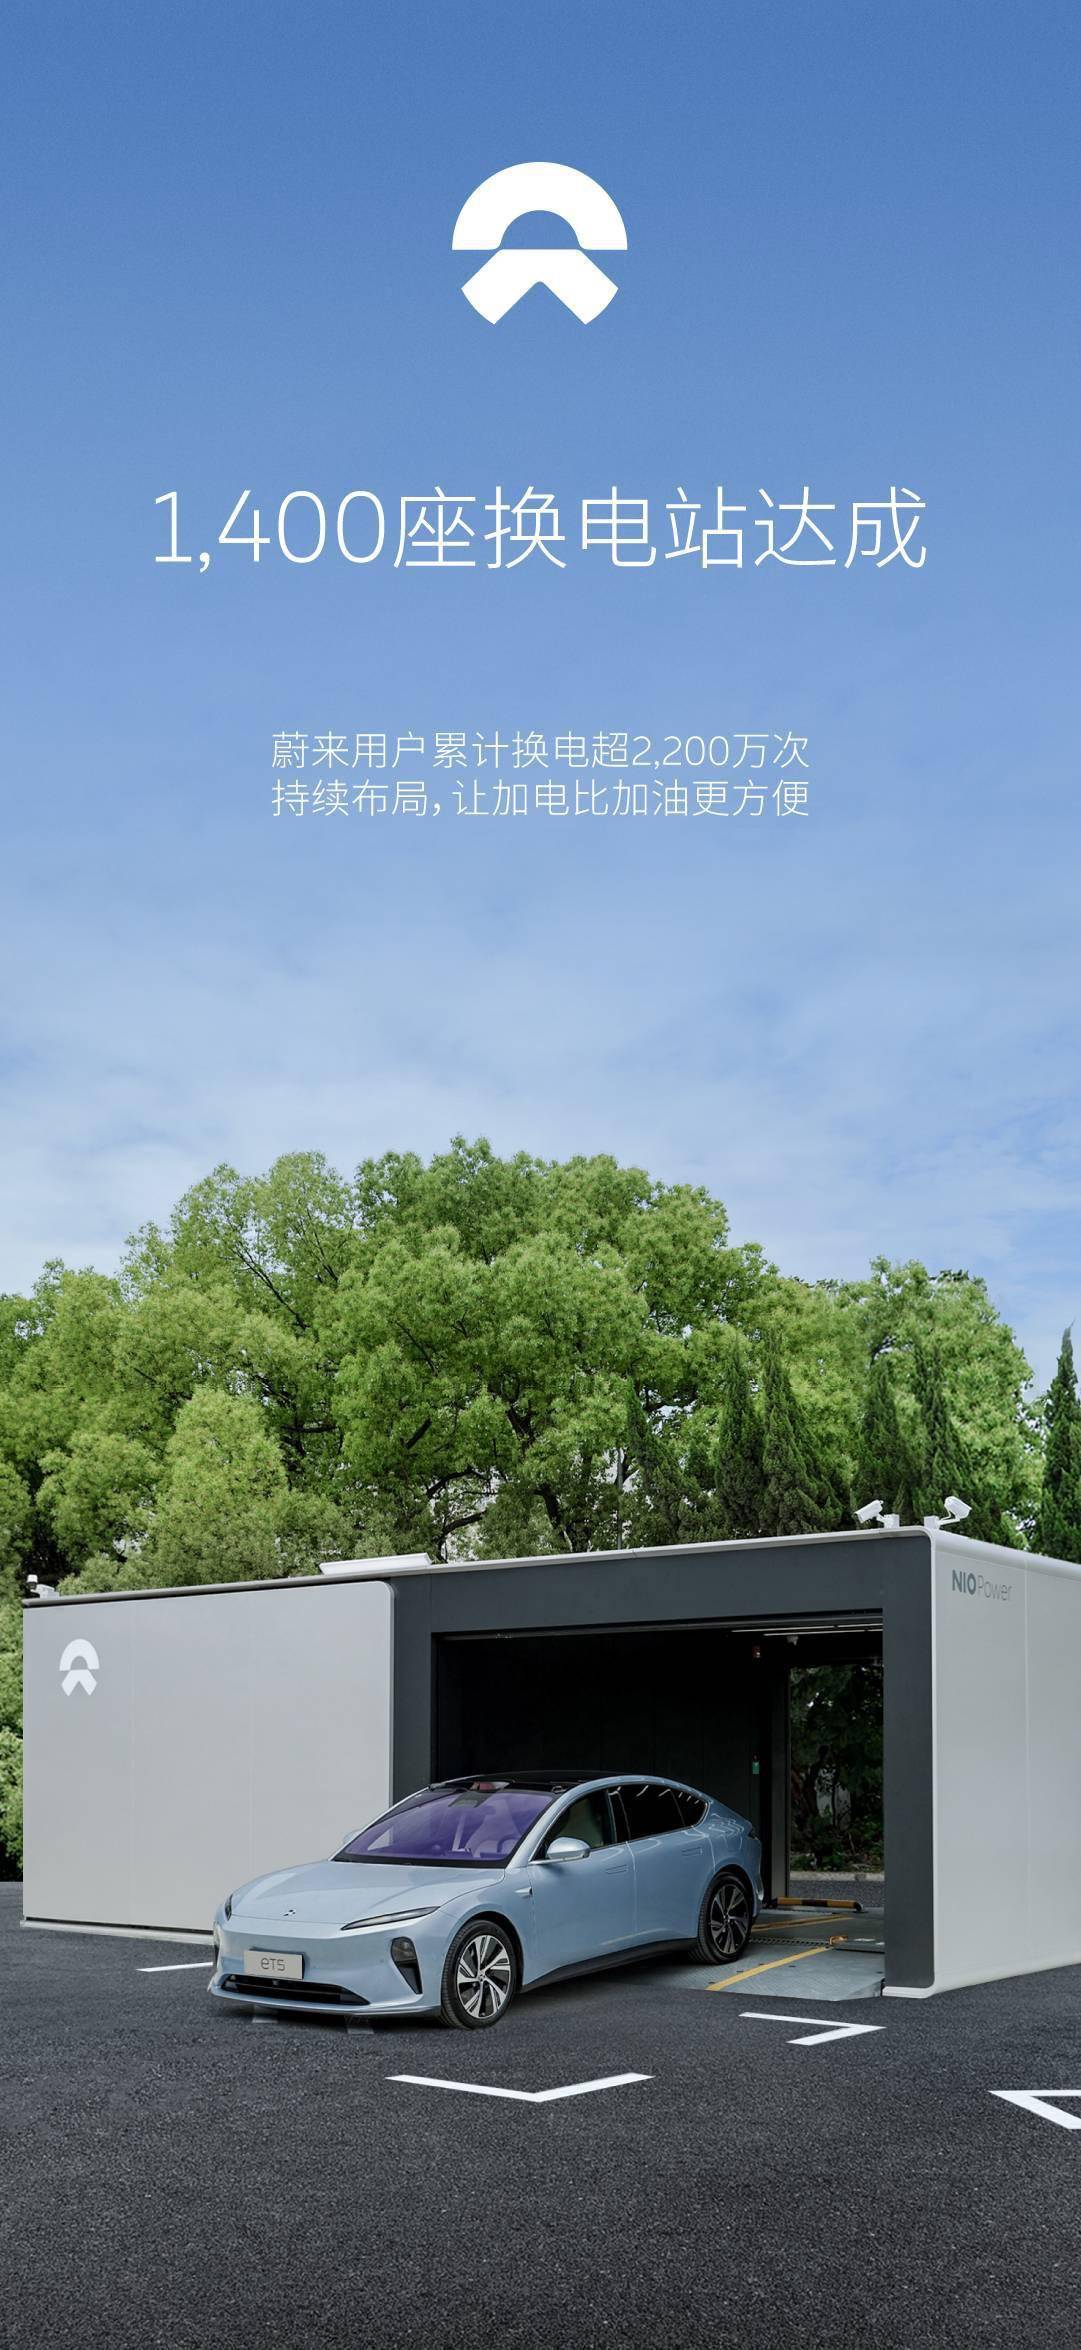 蔚来宣布第1400座换电站 —— 上海麦德龙普陀店今日正式上线